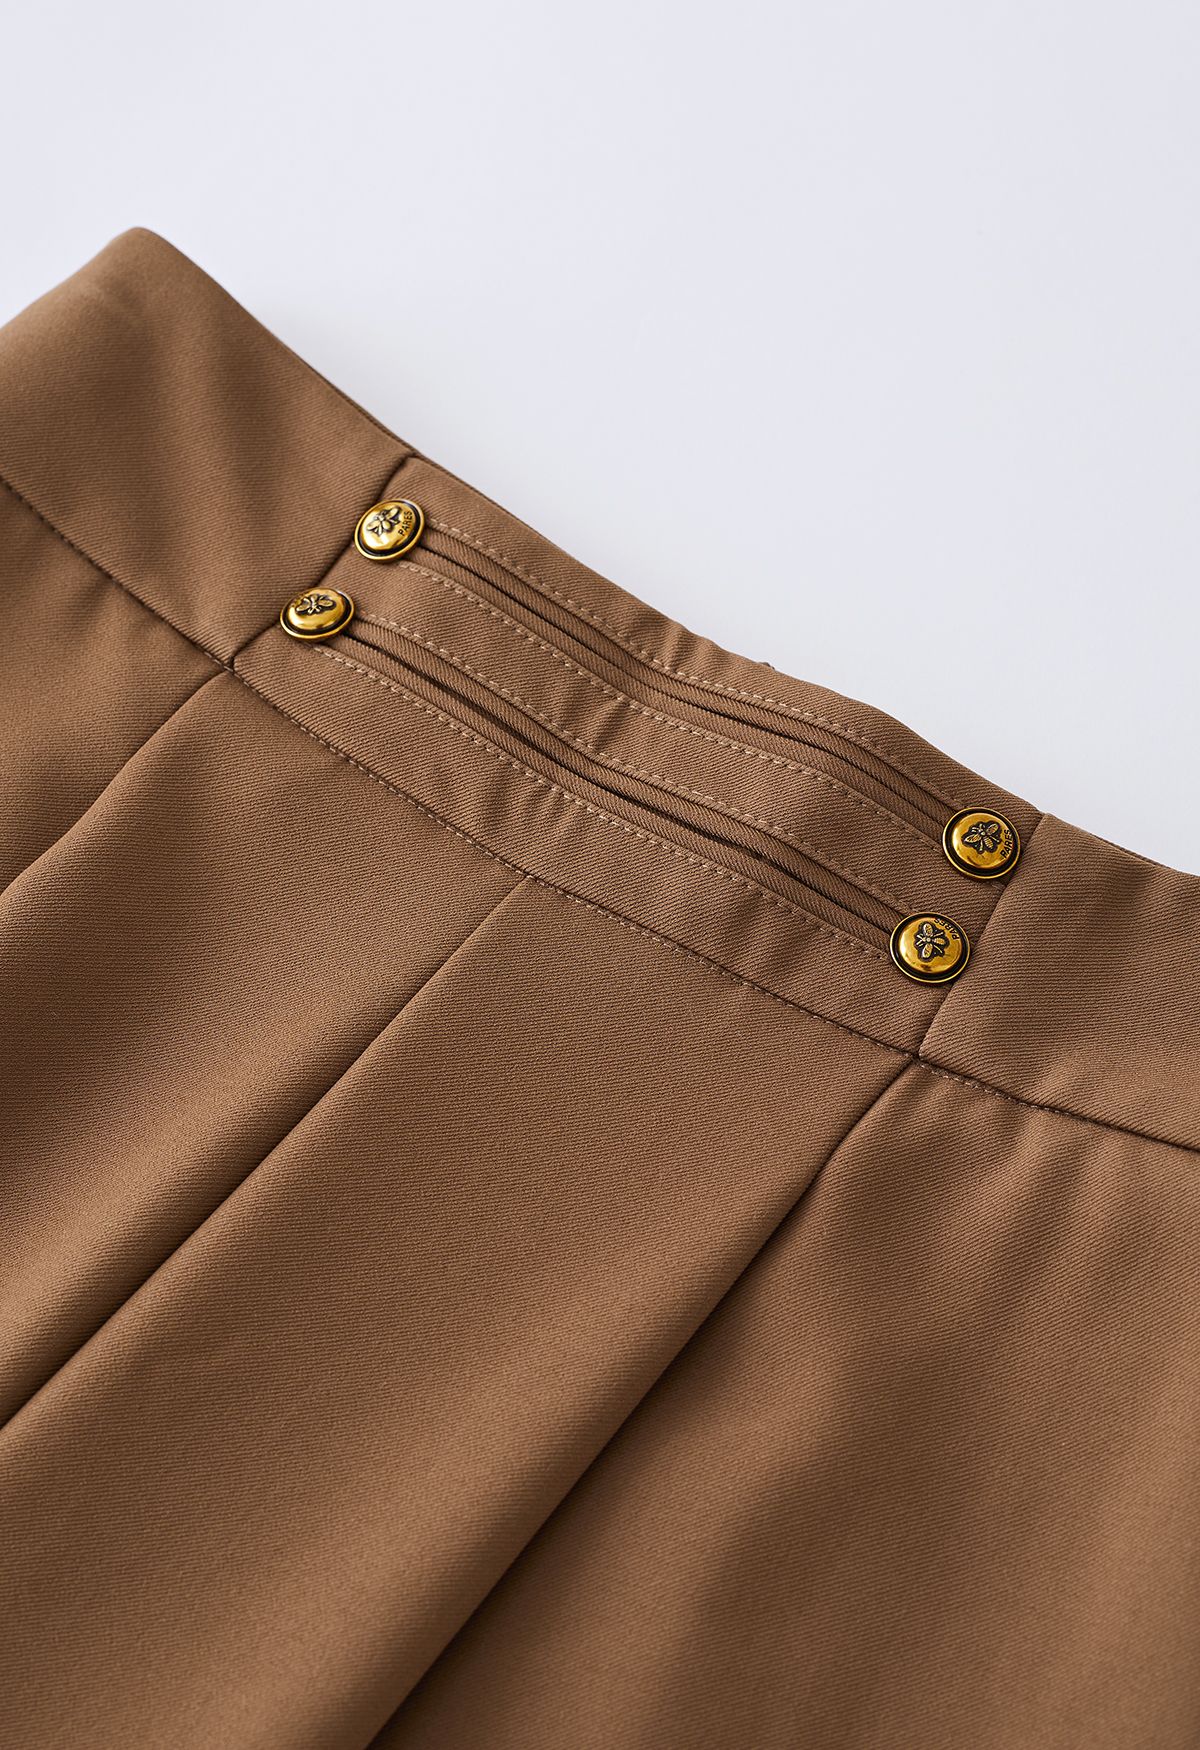 Pantalones anchos con botones dorados en marrón